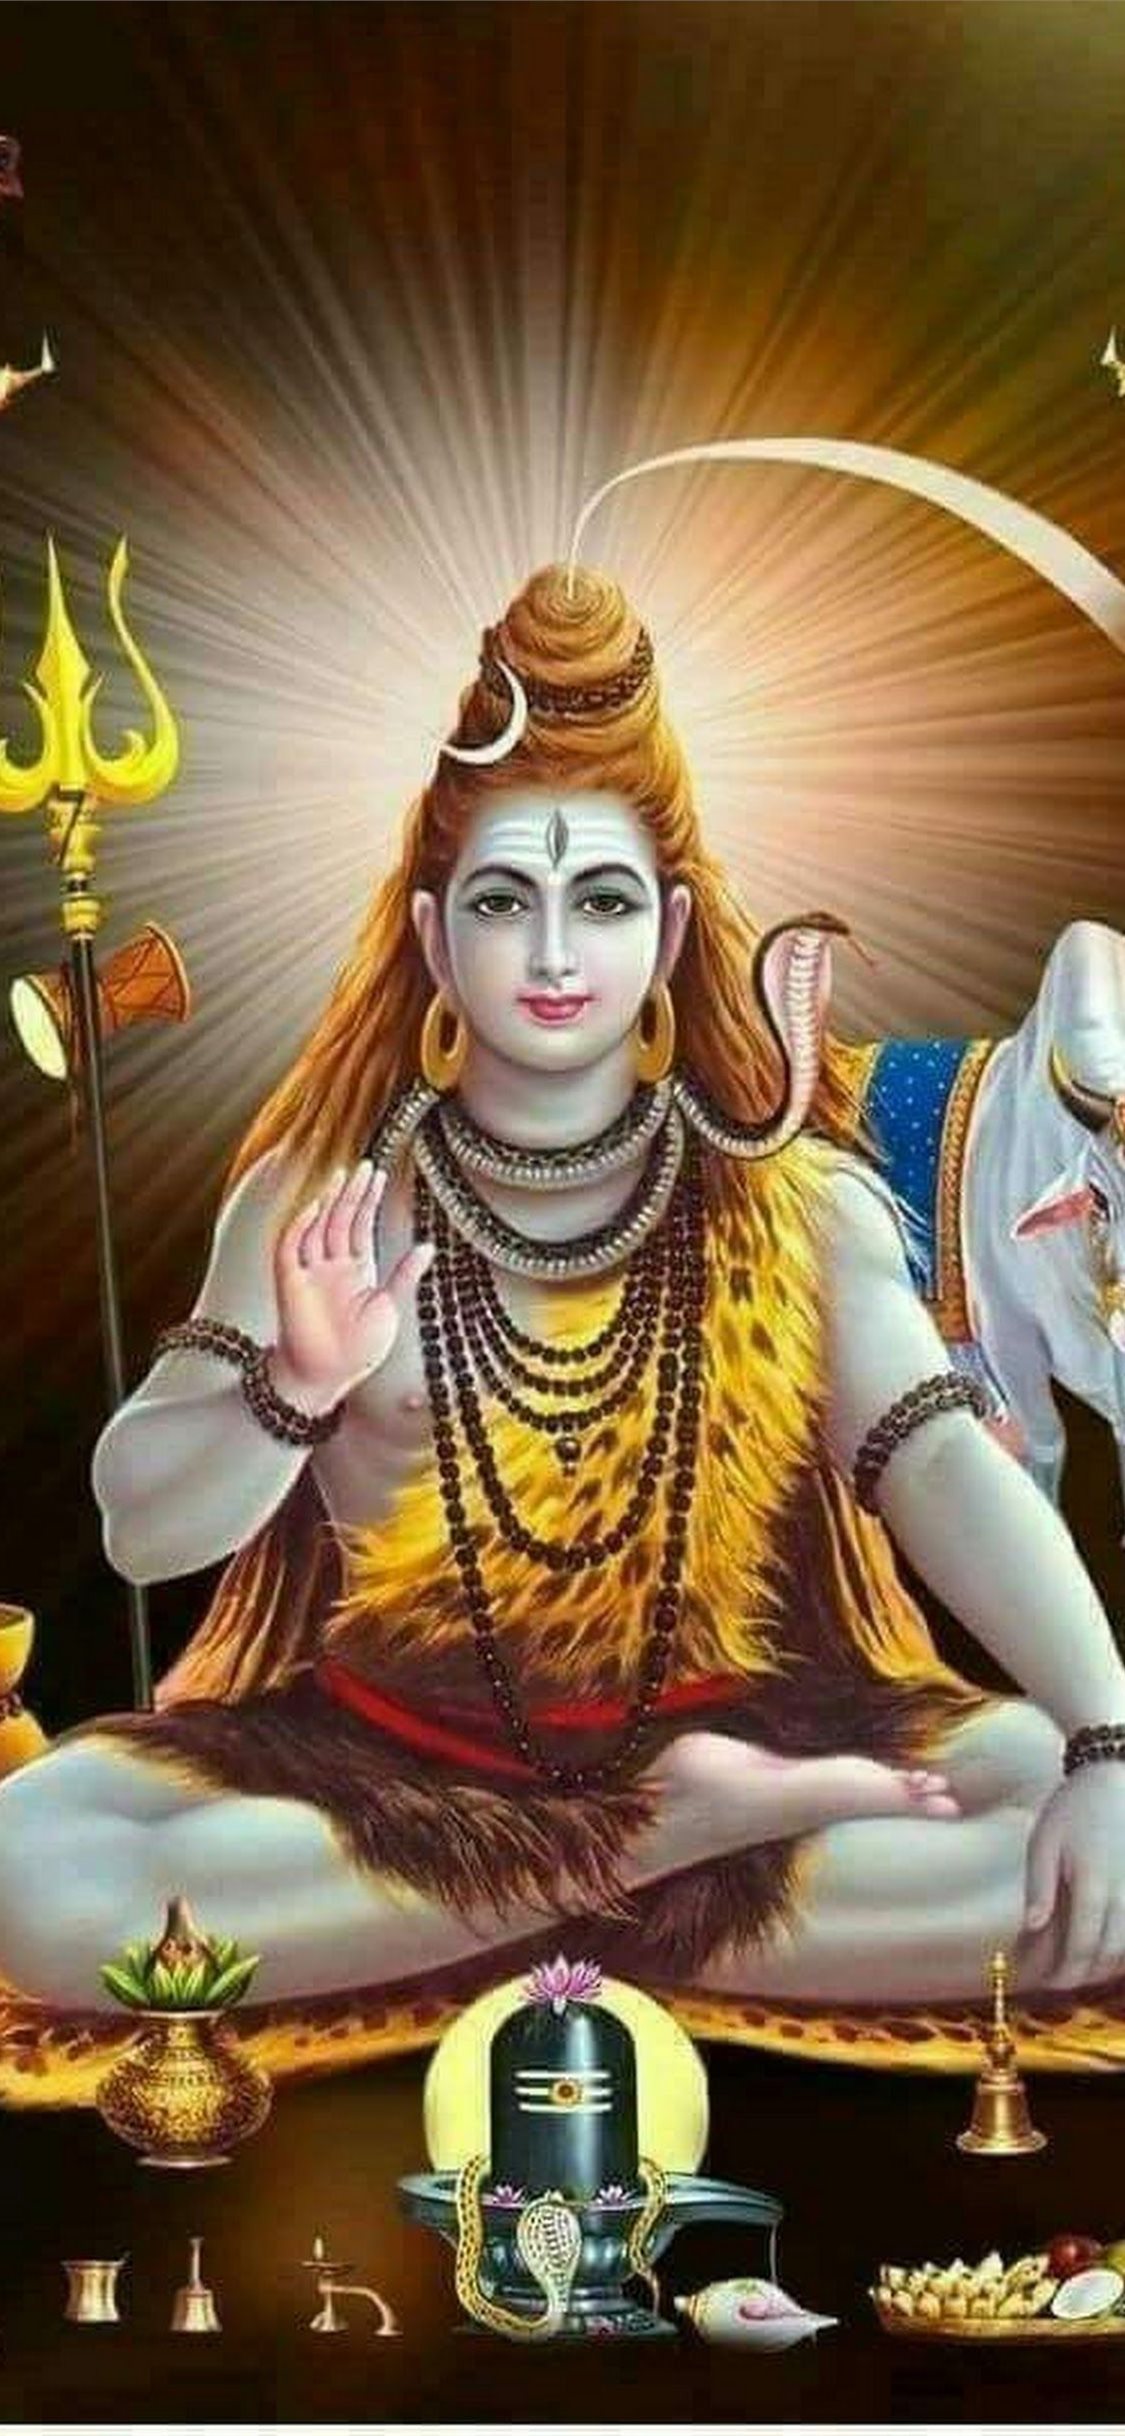 47+] Hindu God HD Wallpapers 1080p - WallpaperSafari